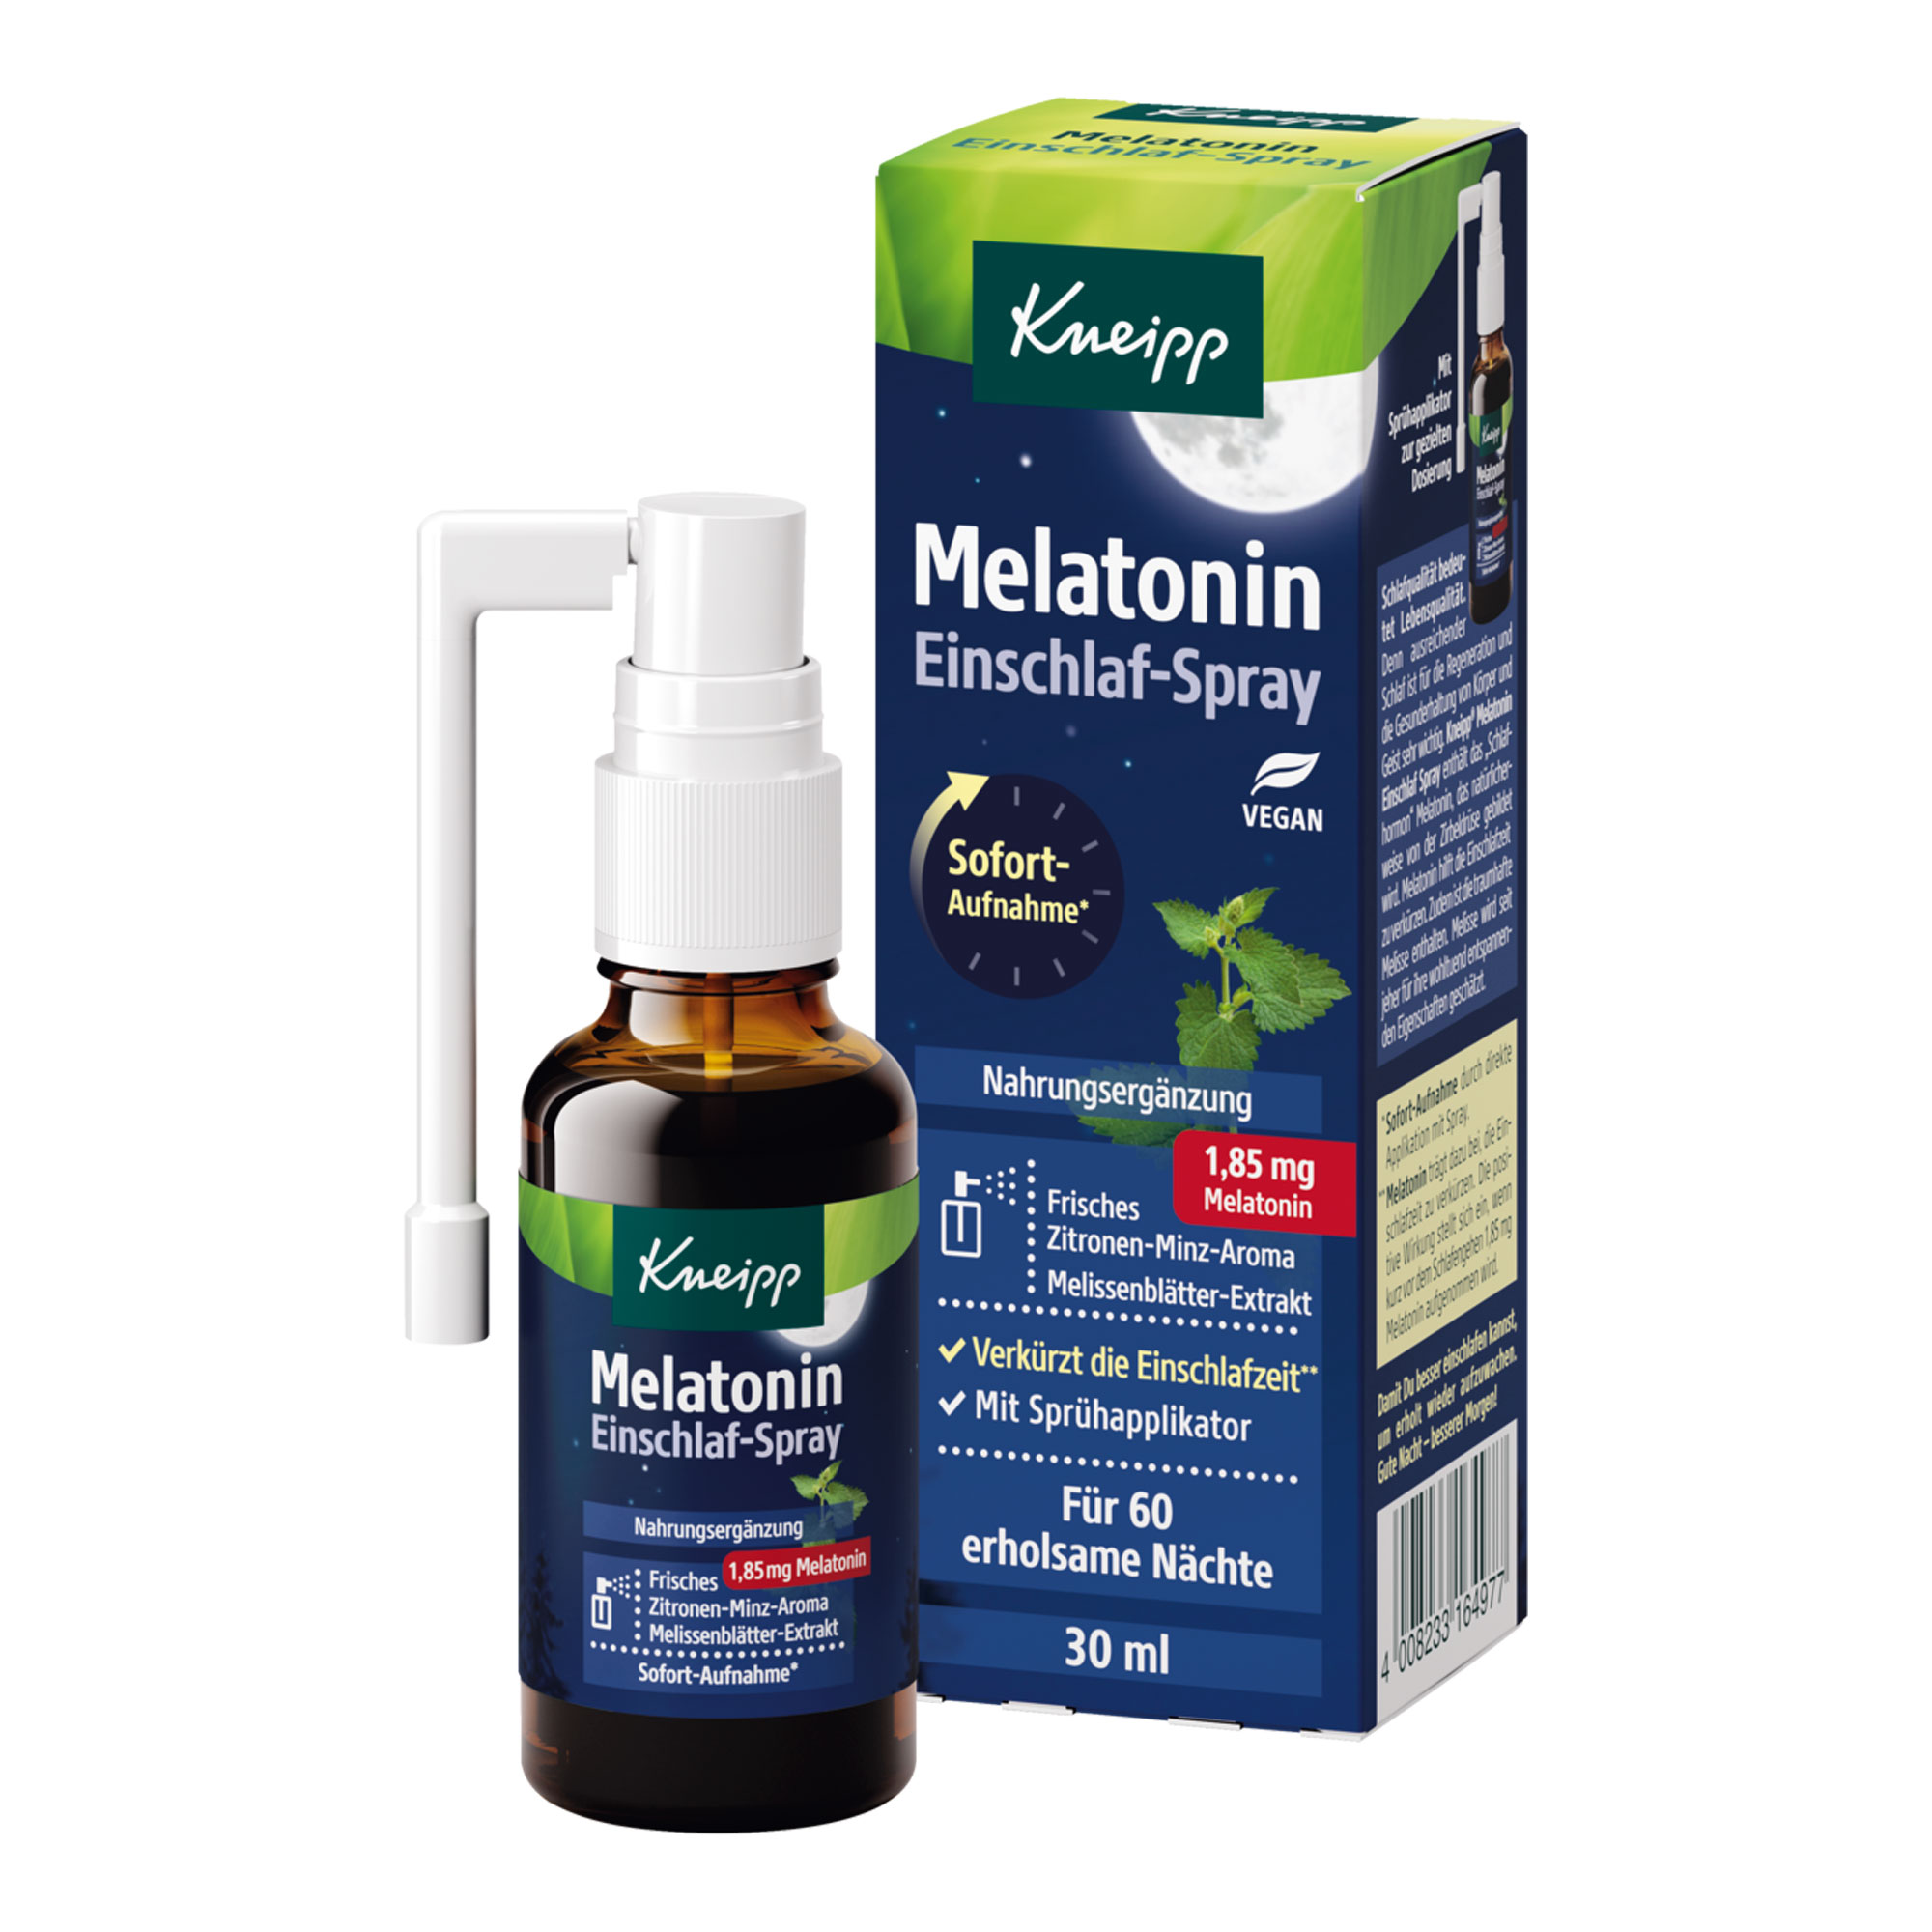 Nahrungsergänzungsmittel mit Melatonin und Melissenblätter-Extrakt sowie mit Sprühapplikator zur gezielten Dosierung.